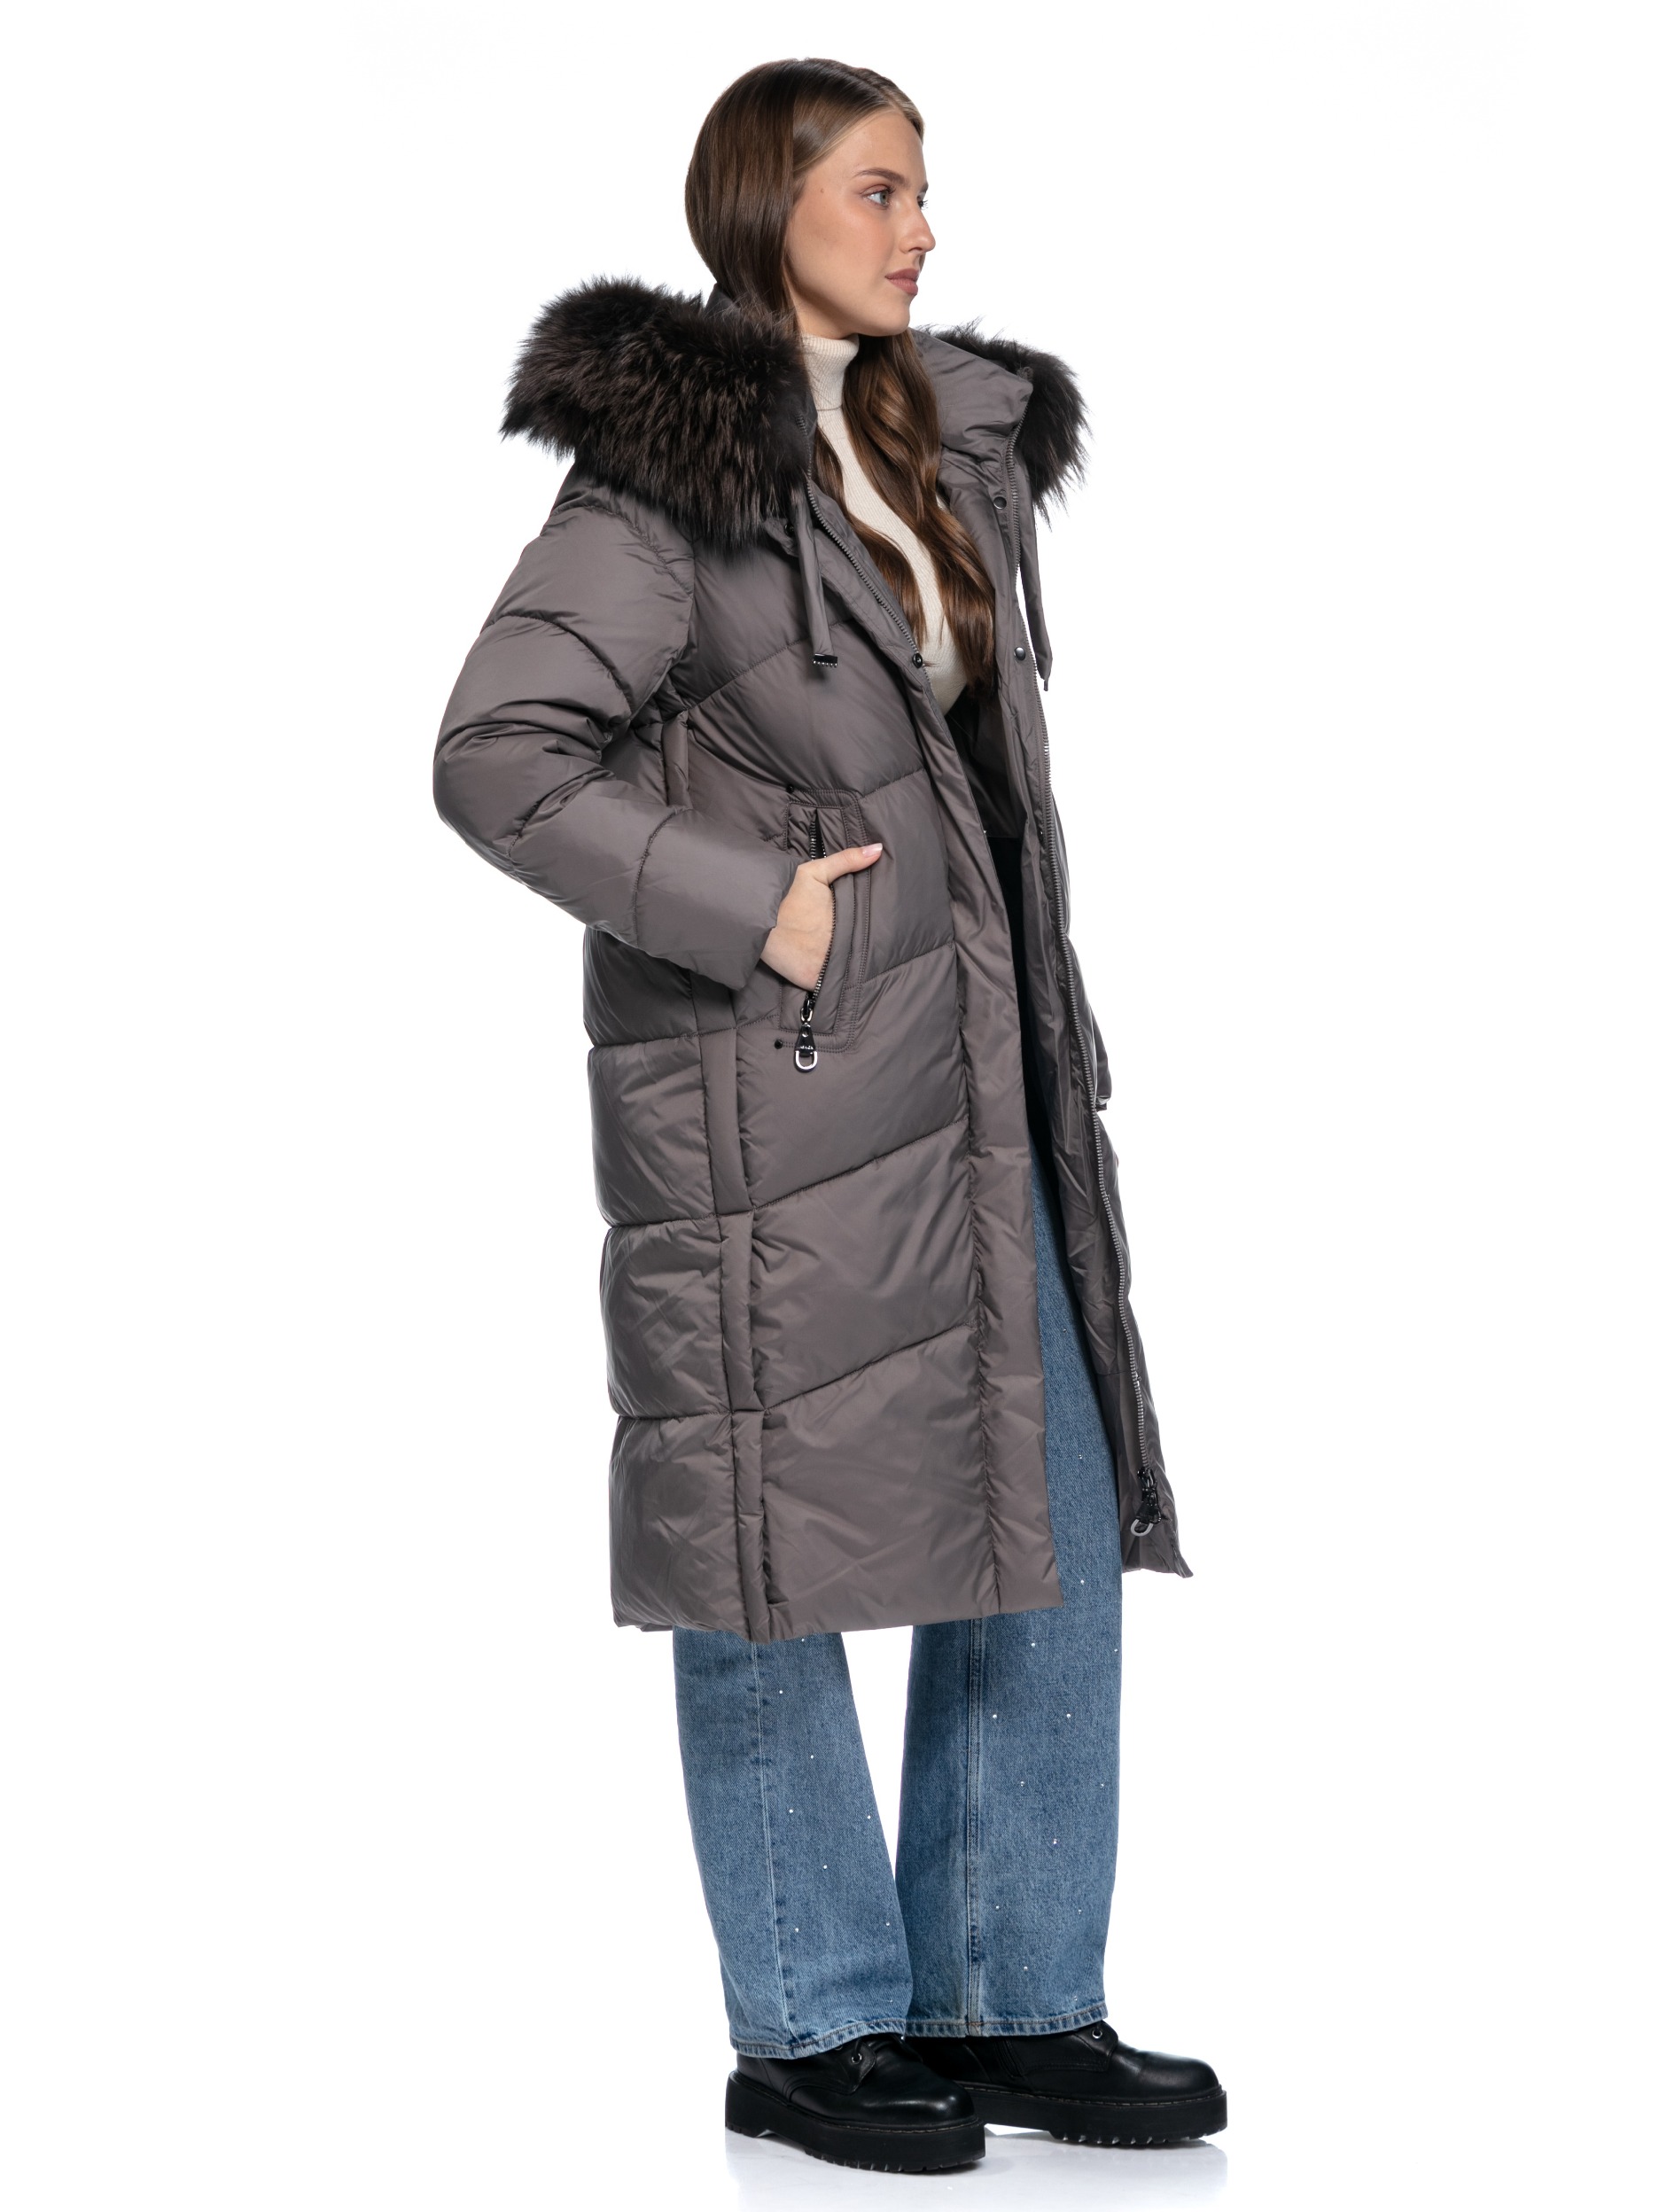 Текстильное зимнее пальто на синтепоне с капюшоном, отделкой из меха енота